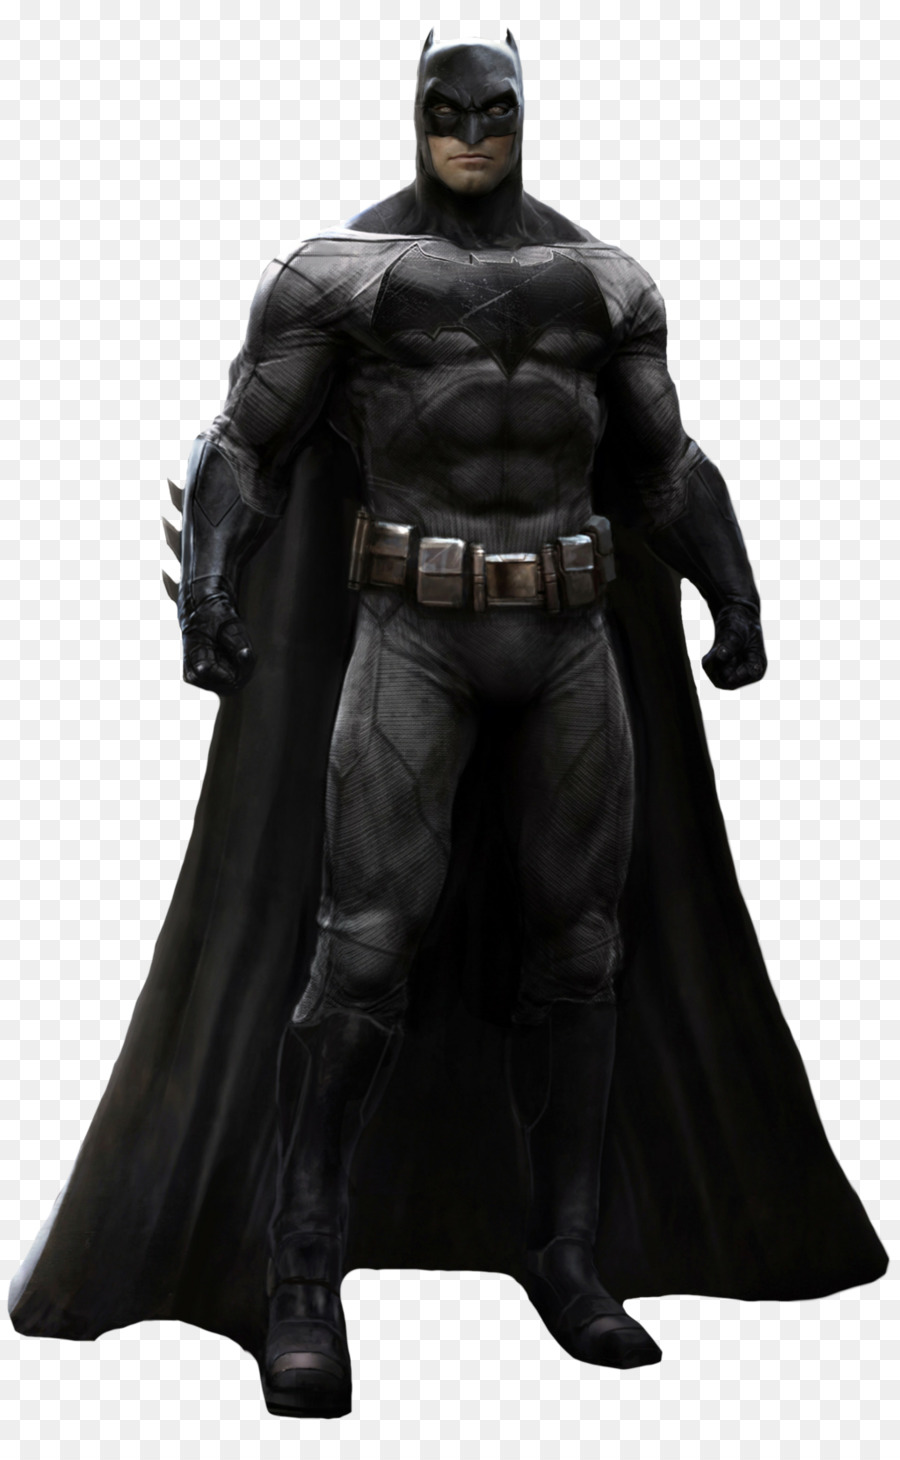 Batman Joker  Batsuit Comics - batman png download - 1024*1640 - Free Transparent Batman png Download.